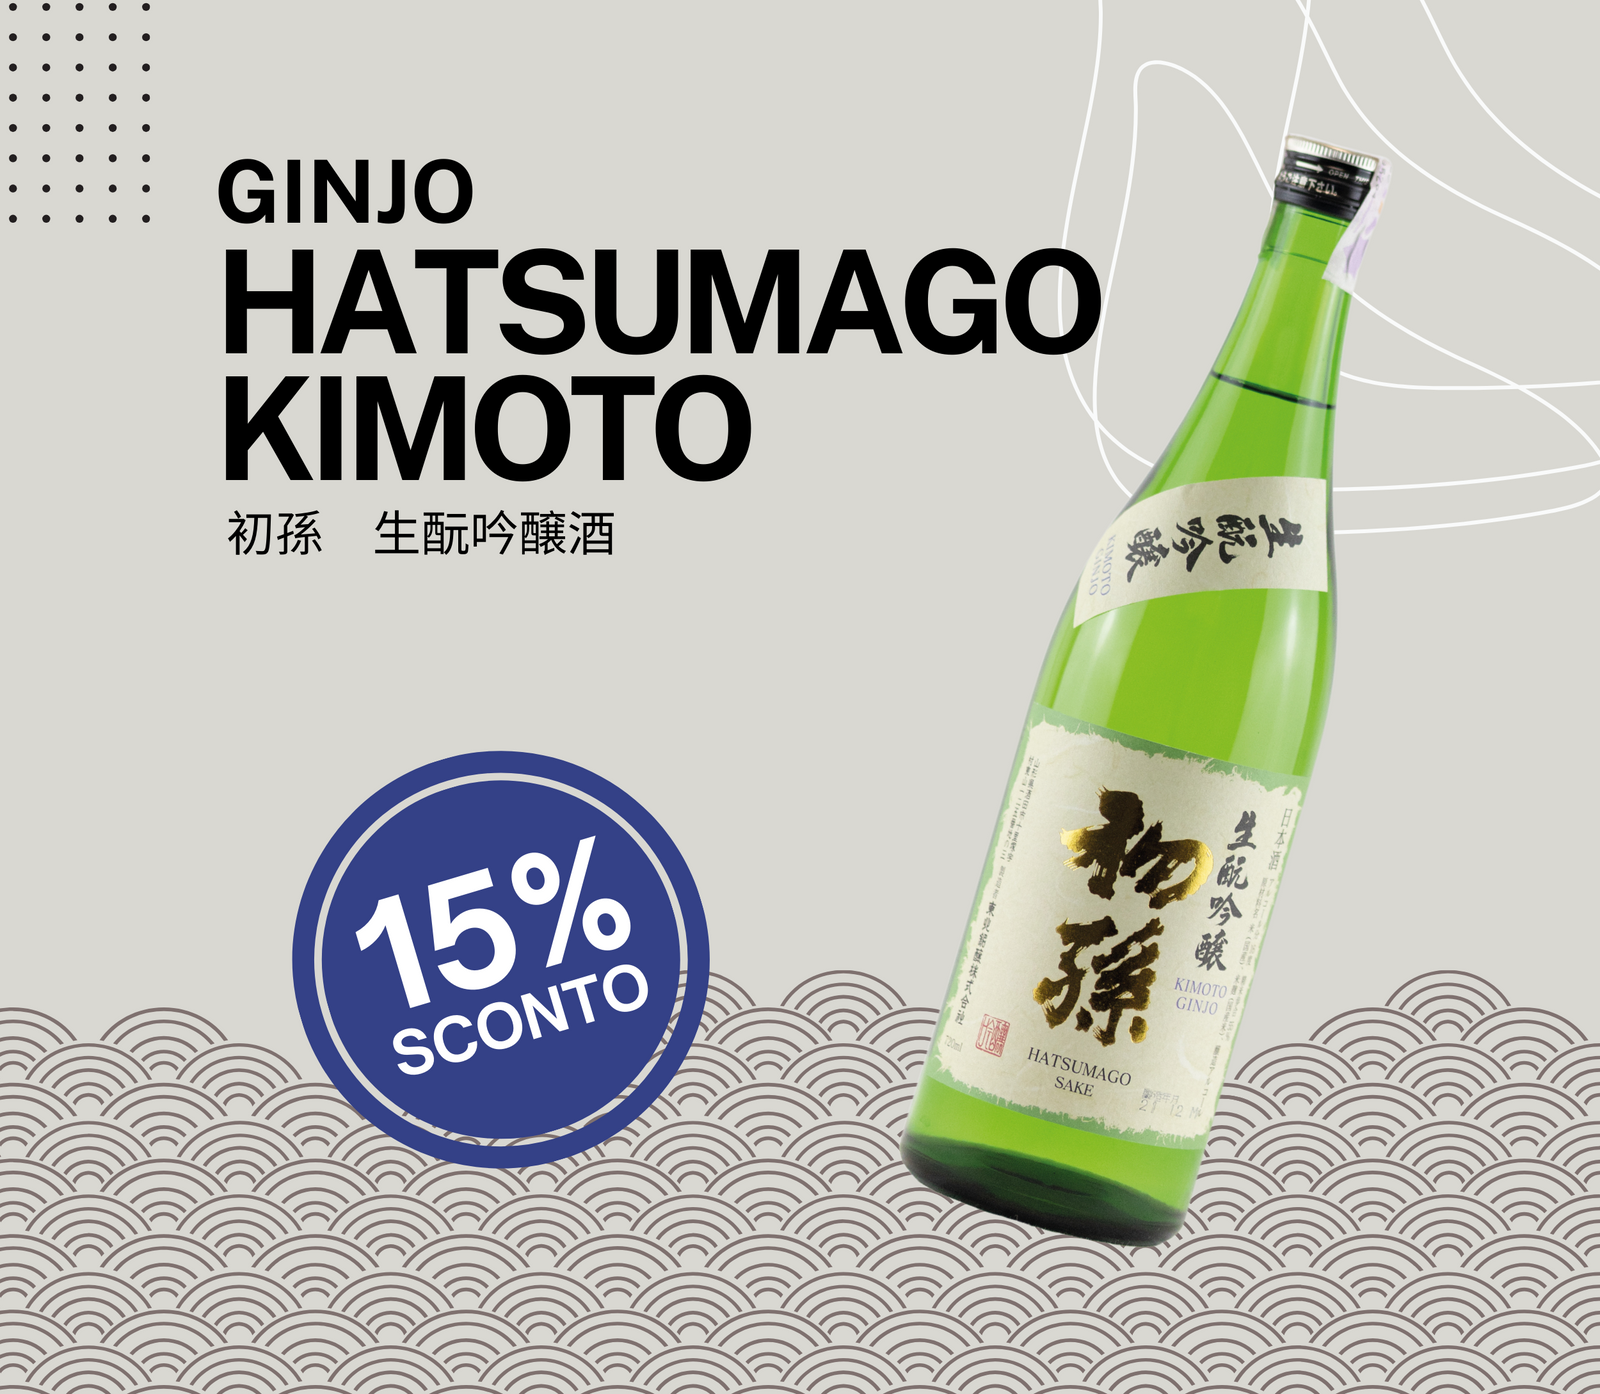 Dolce dolce commercio all'ingrosso di sake giapponese per bere e